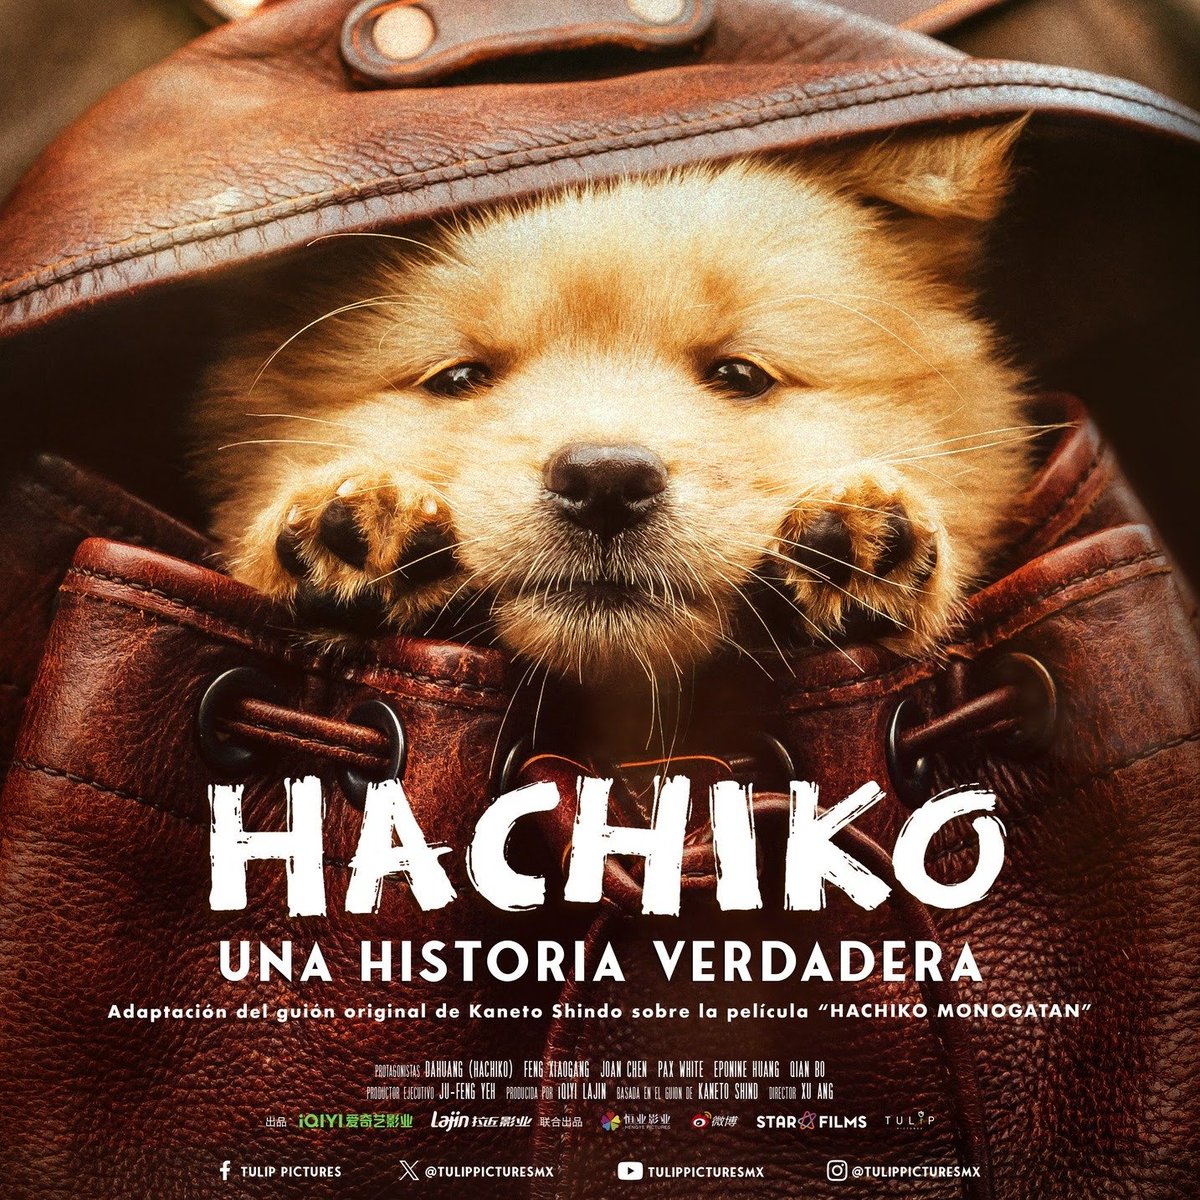 Póster oficial de #Hachiko #UnaHistoriaVerdadera. 
En cines el 23 de mayo en México
#XarliClub